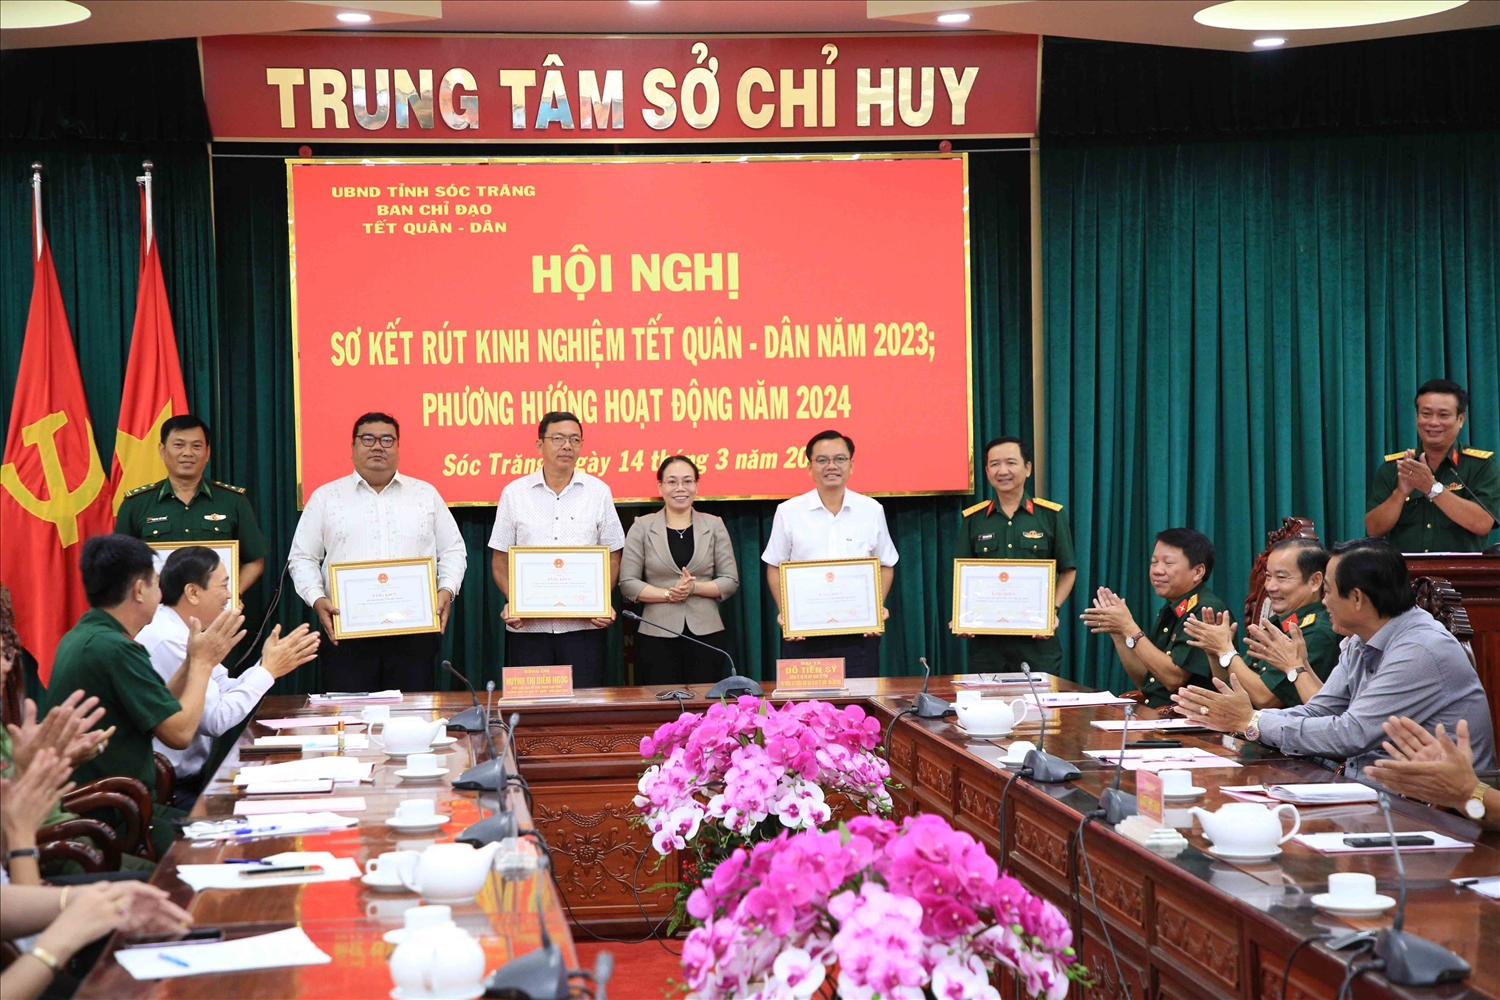 Bà Huỳnh Thị Diễm Ngọc – Phó Chủ tịch UBND tỉnh Sóc Trăng tặng bằng khen của UBND tỉnh cho các tập thể có thành tích tiểu biểu trong tham gia hoạt động Tết quân – dân năm 2023.